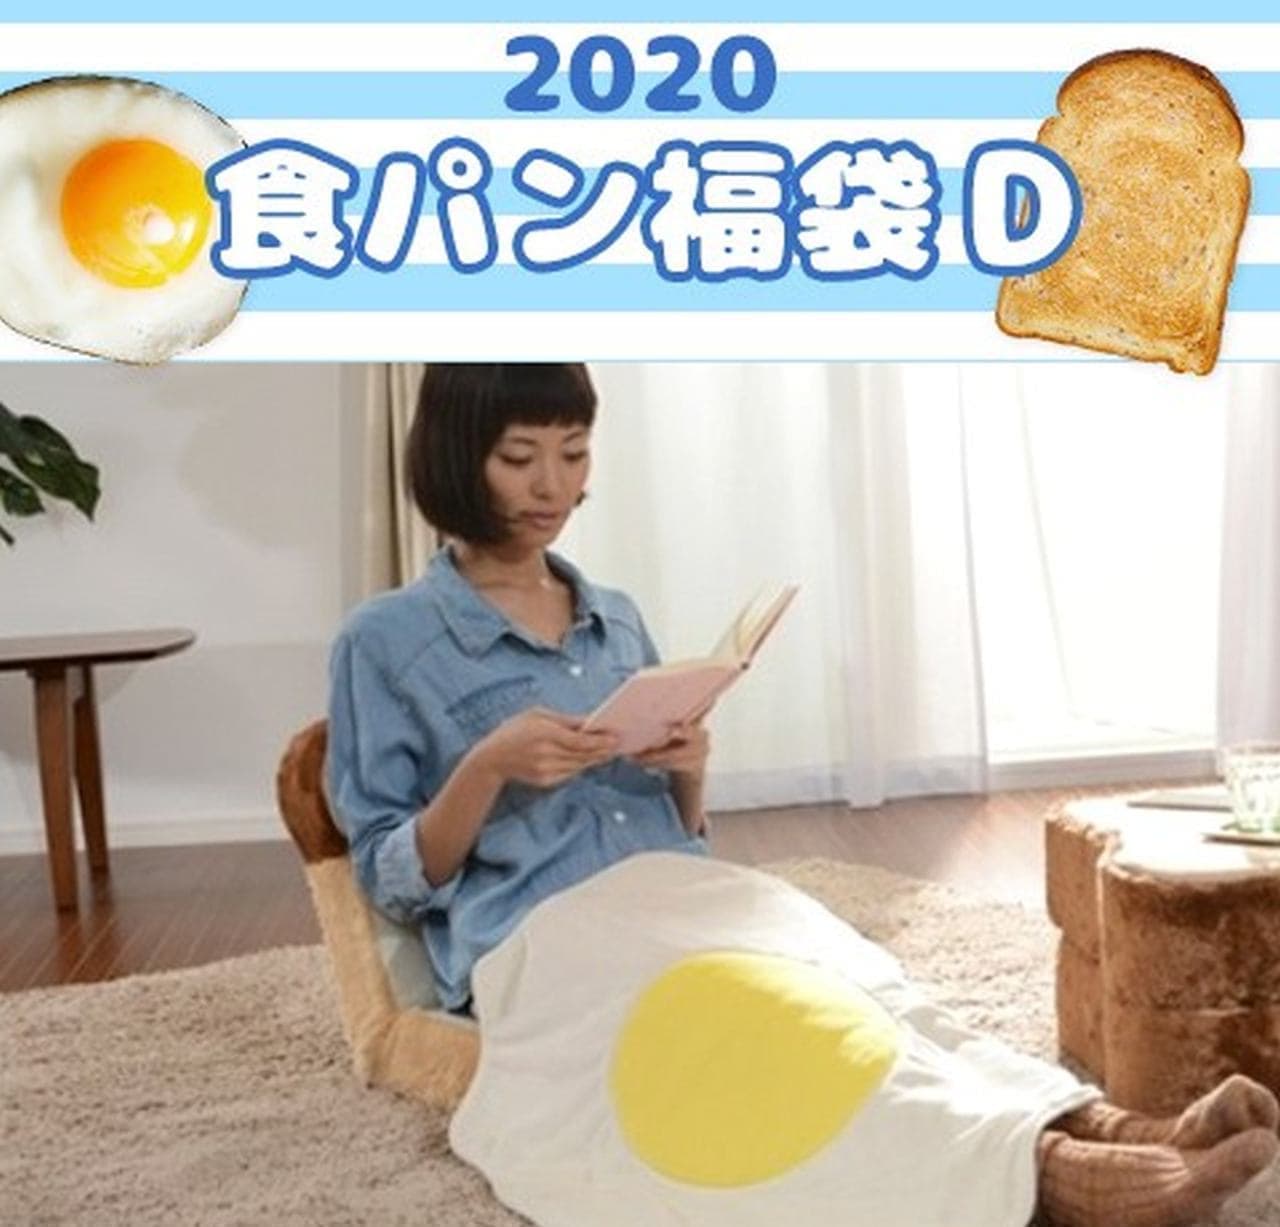 "Bread lucky bag 2020" Fascinating bread lucky bag